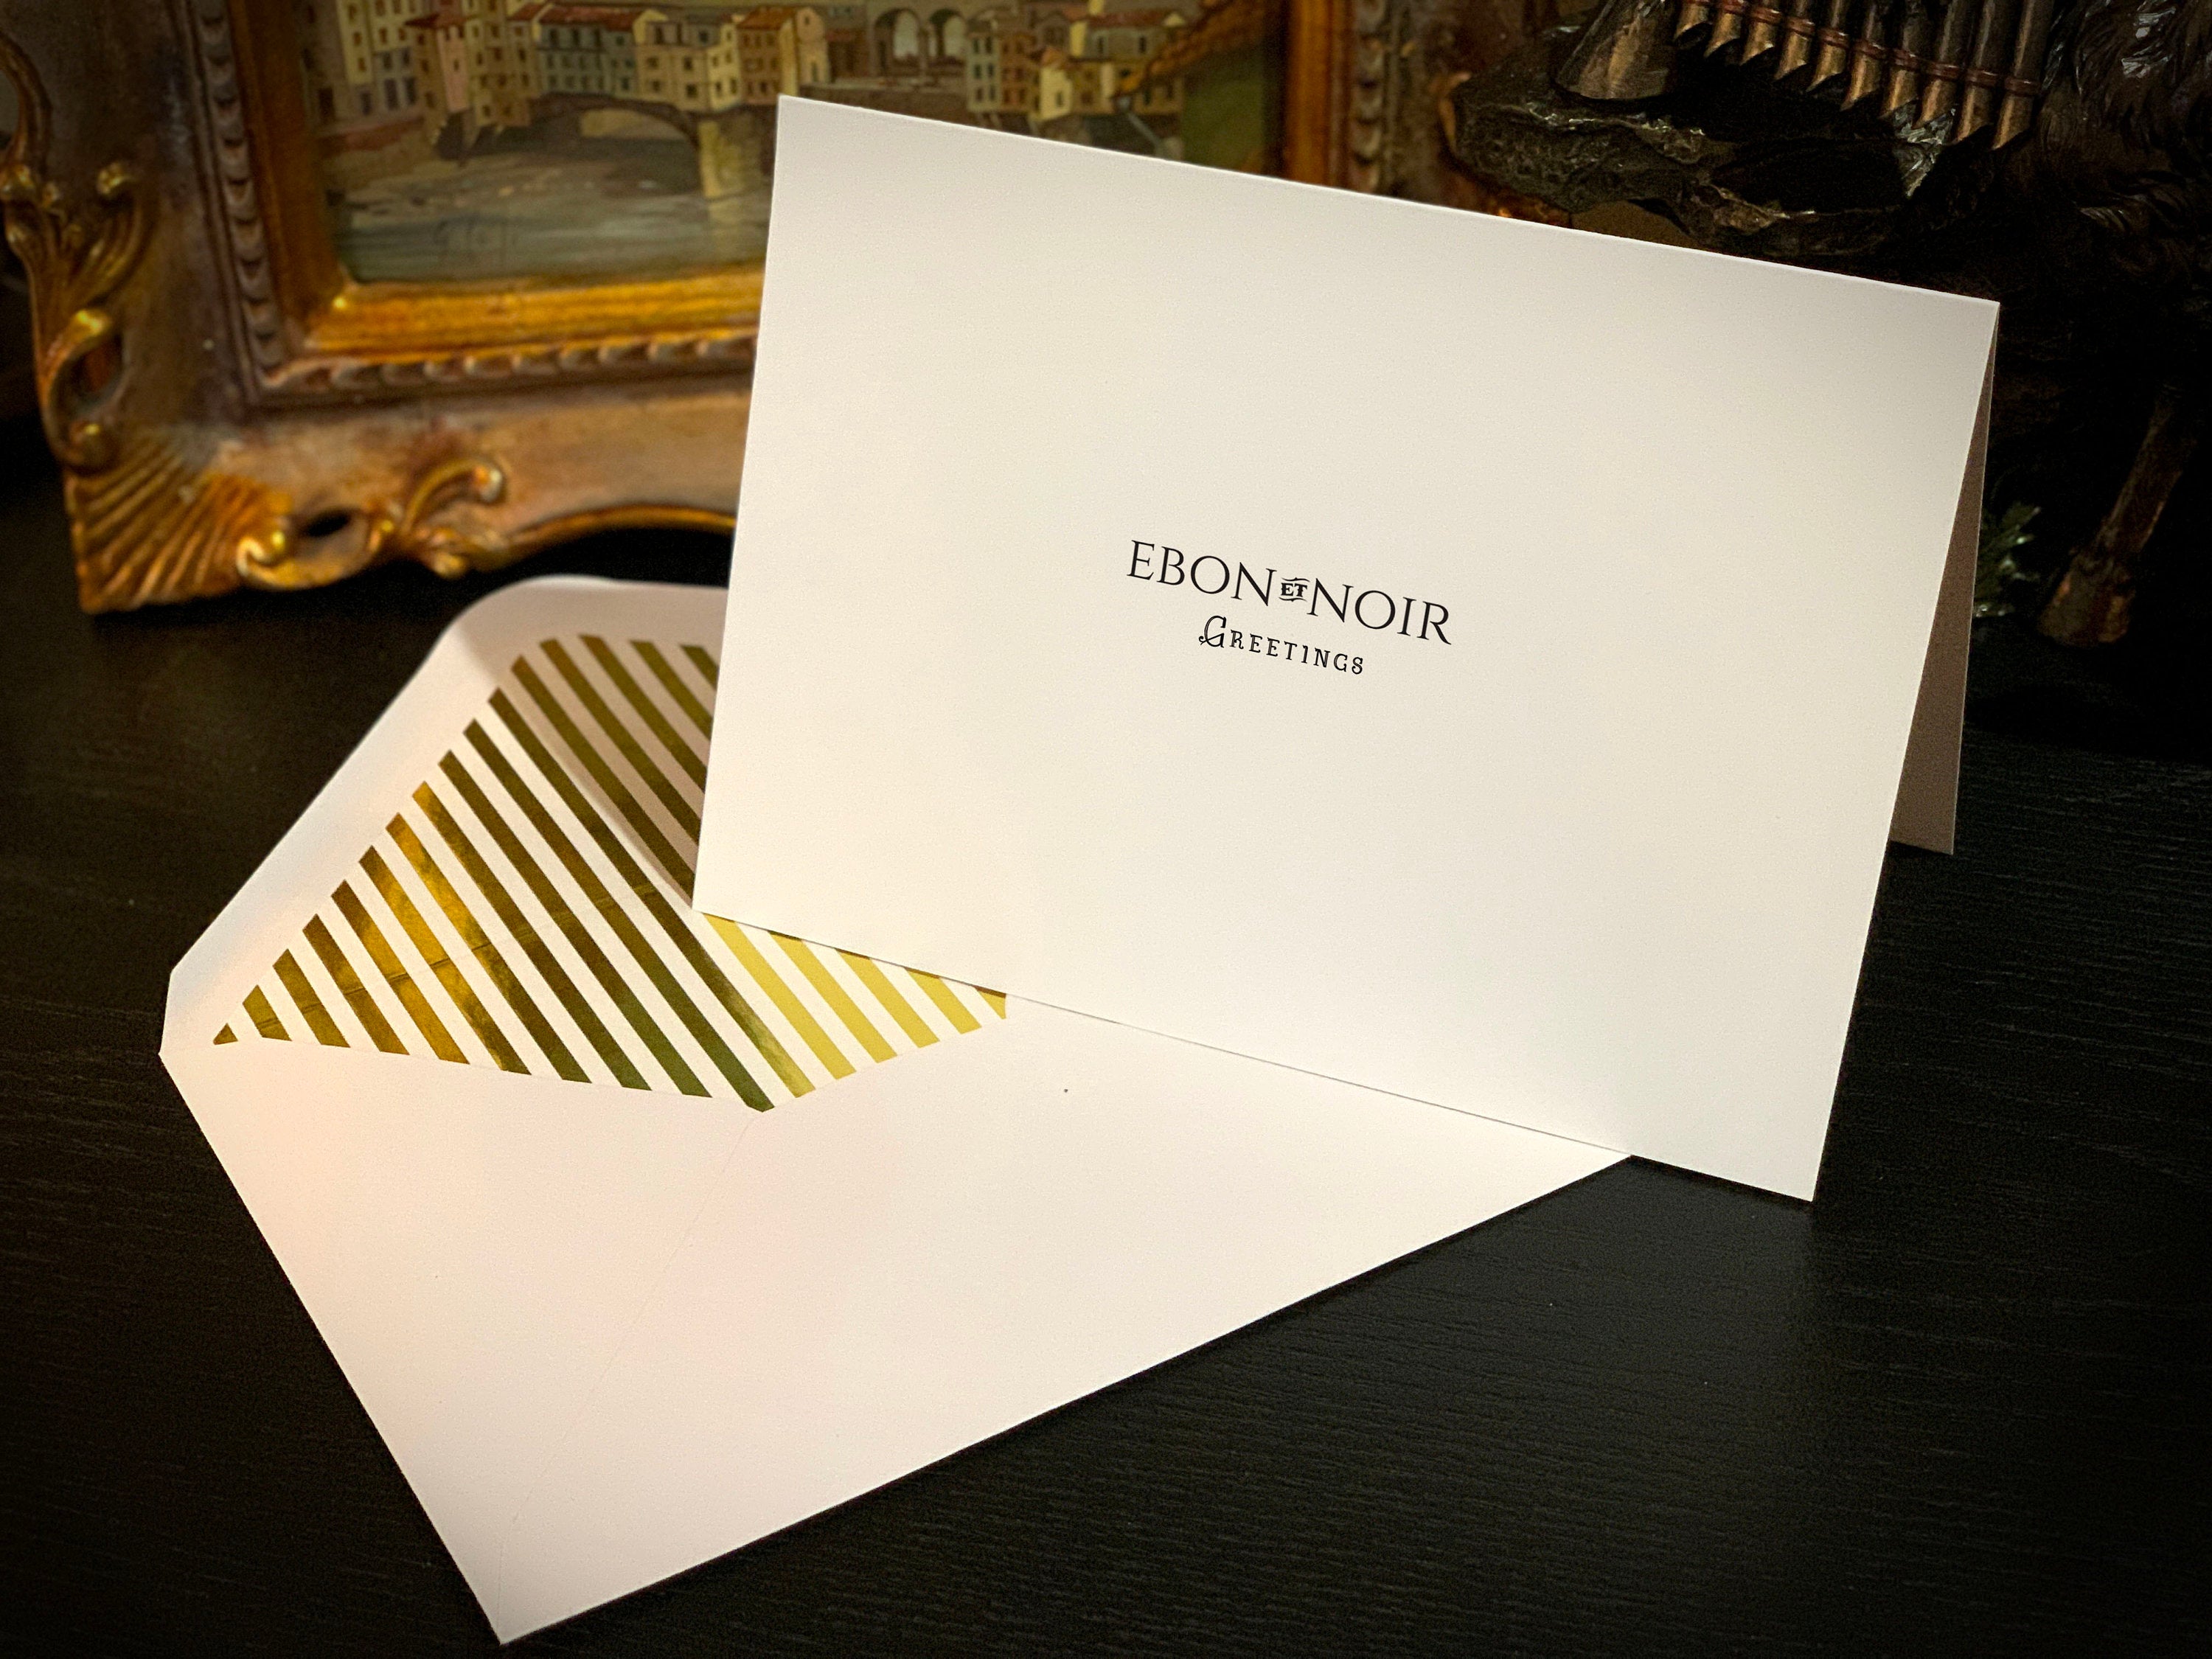 Pastel Easter Eggs, Easter Greeting Card with Elegant Striped Gold Foil Envelope, 1 Card/Envelope